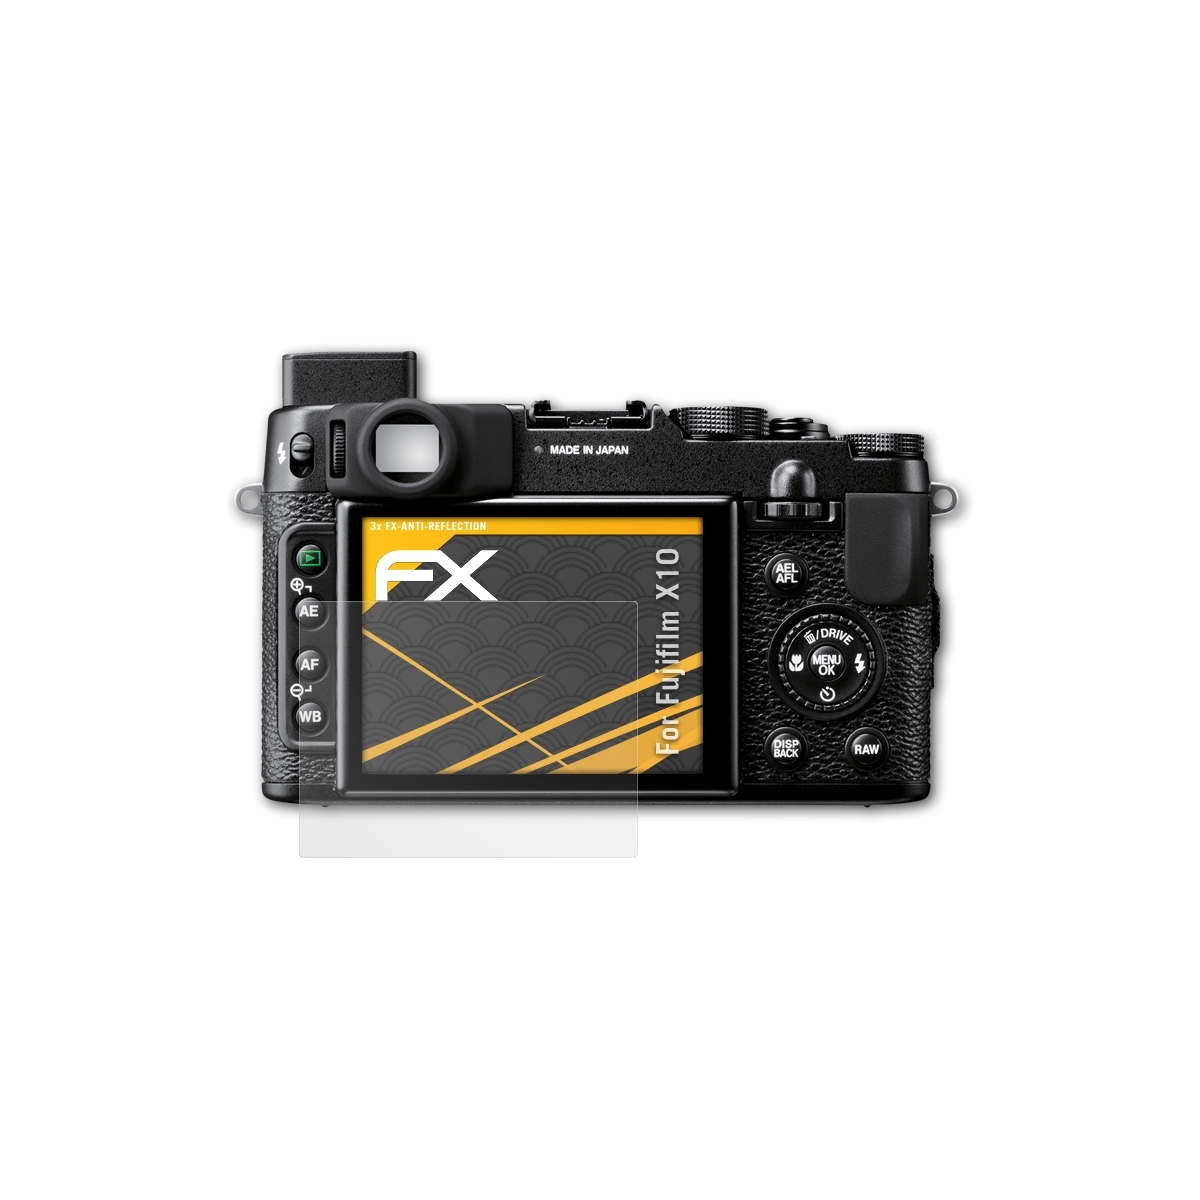 X10) ATFOLIX Fujifilm FX-Antireflex 3x Displayschutz(für